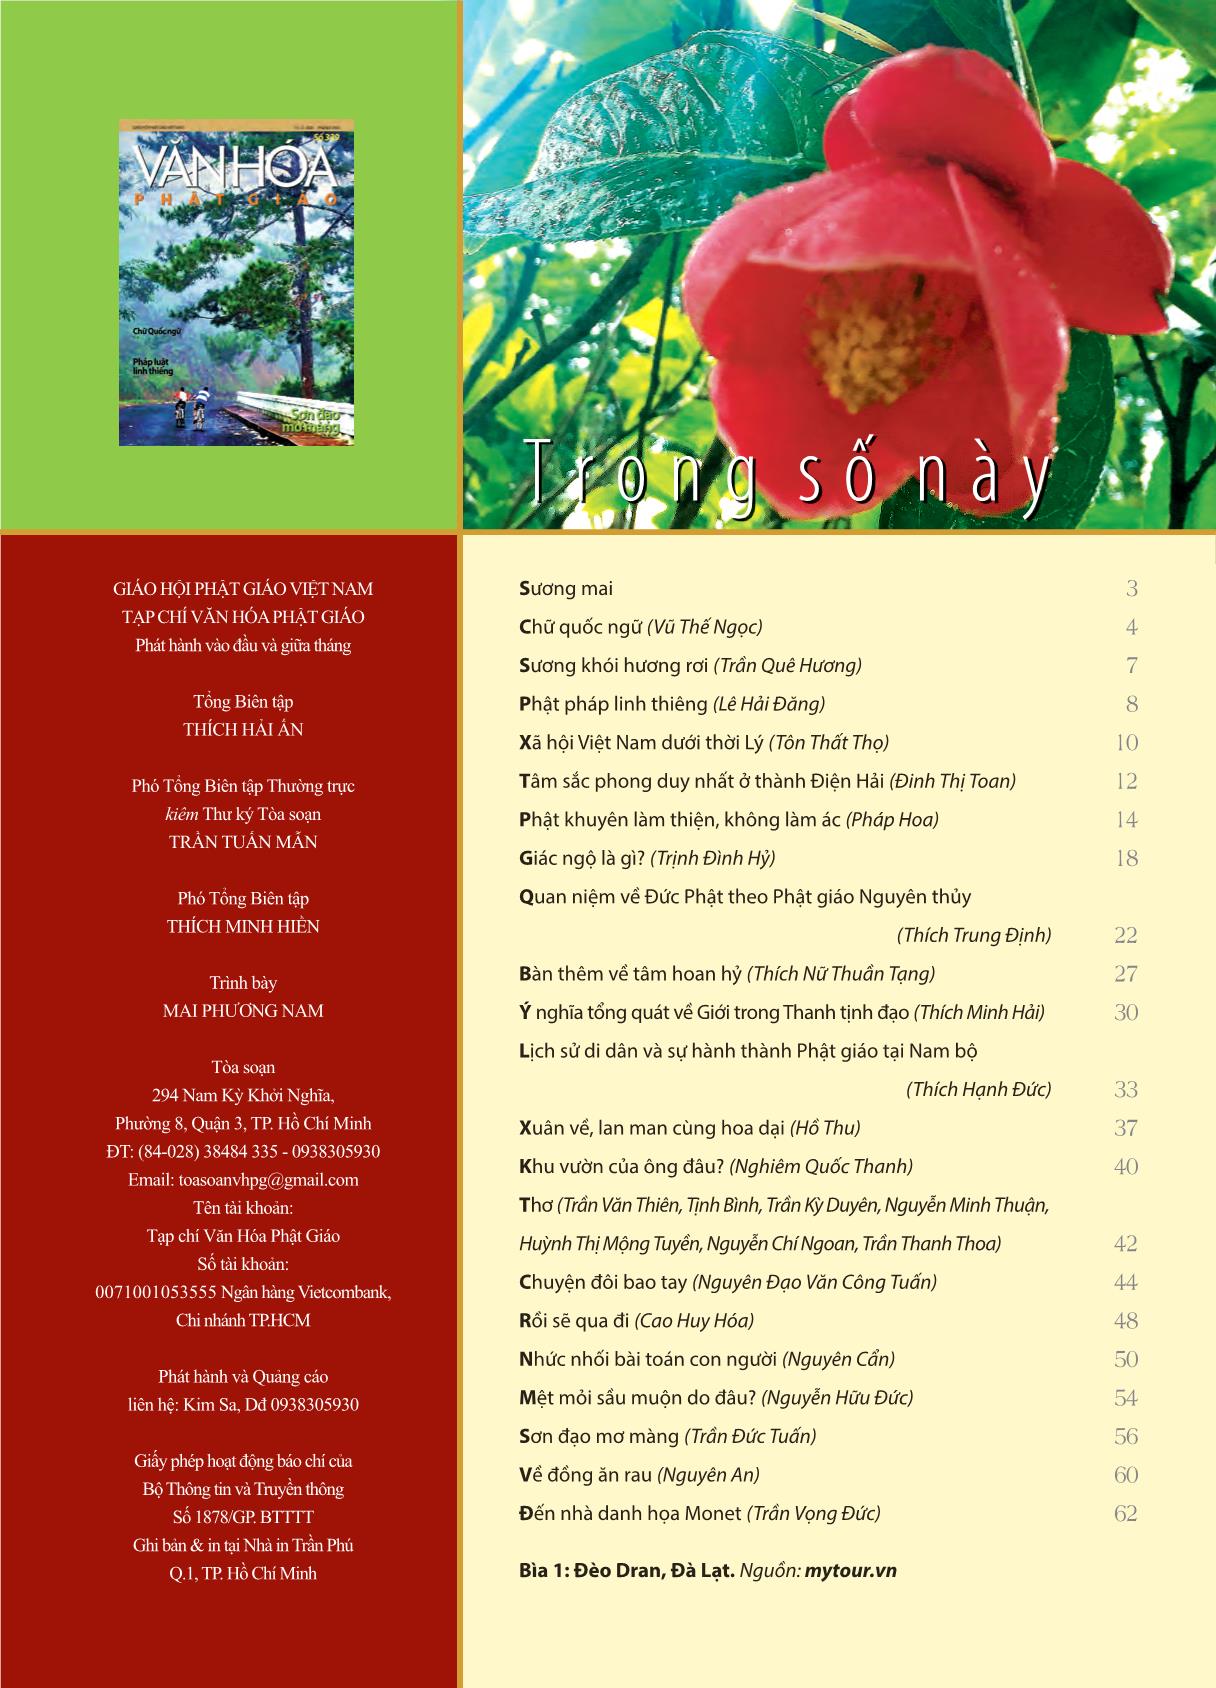 Tạp chí Văn hóa Phật giáo - Số 339 trang 3